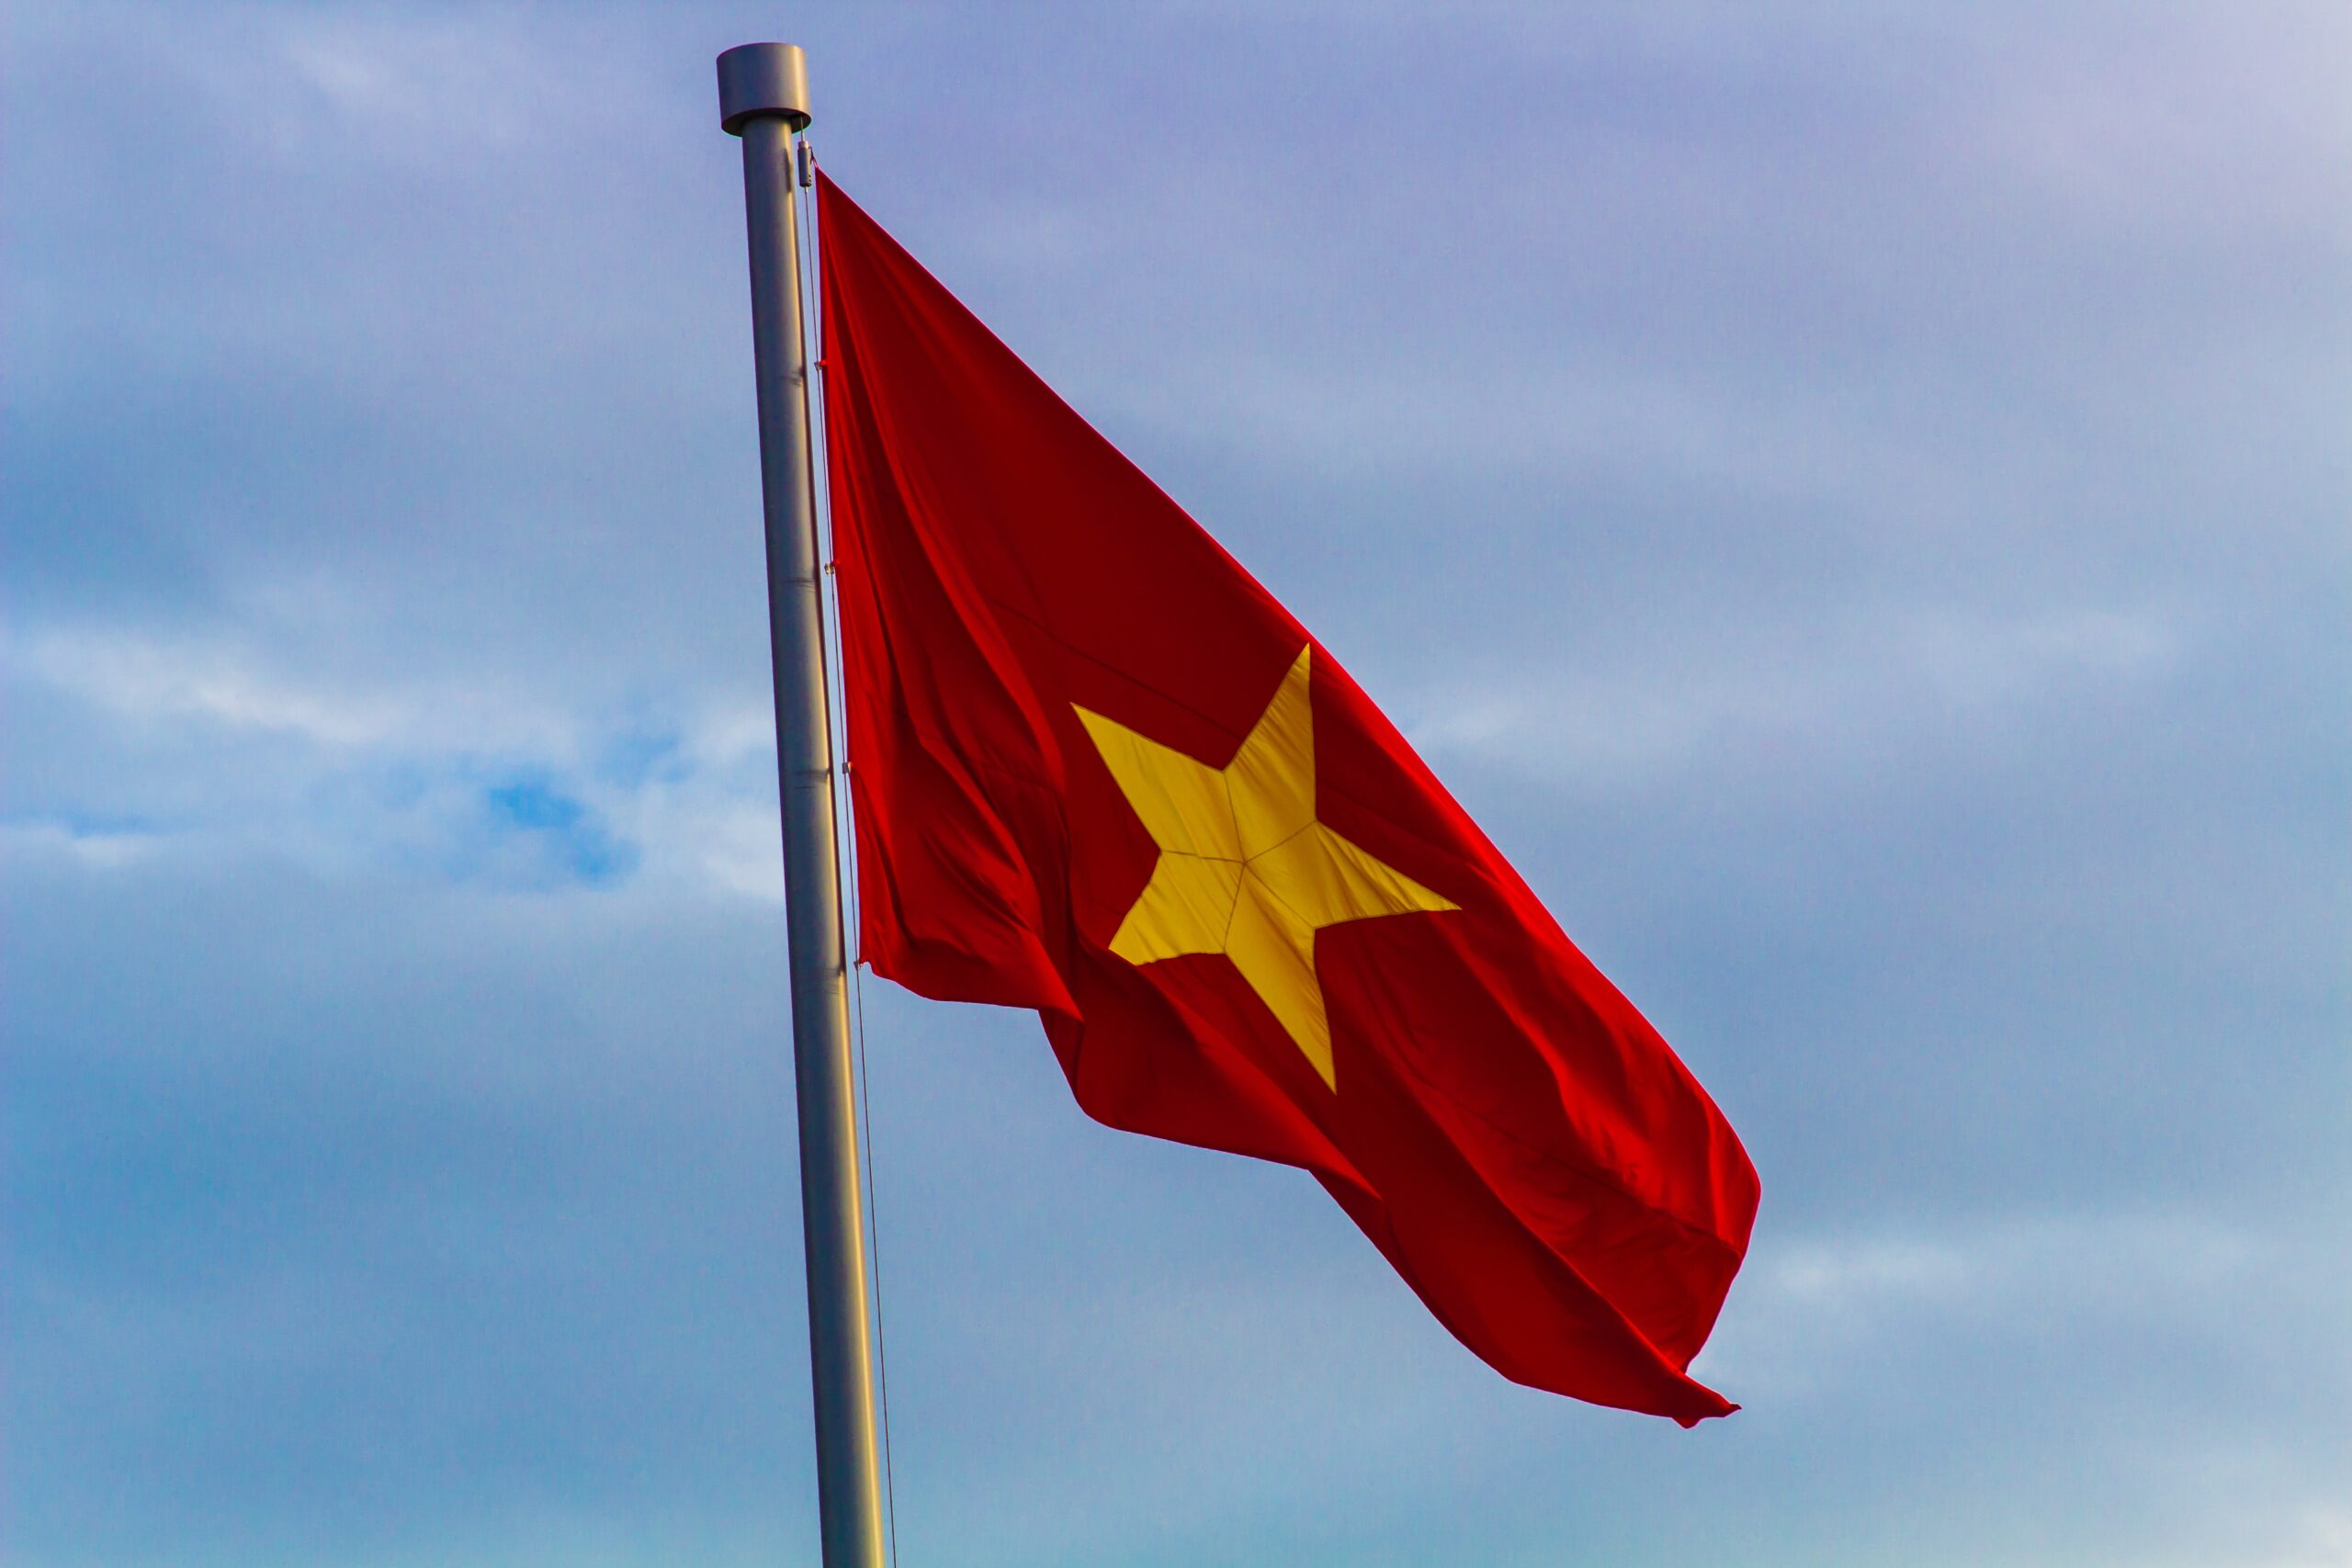 Cờ đỏ sao vàng là biểu tượng của sự bất khuất và lòng yêu nước của người dân Việt Nam. Ý nghĩa của cờ Việt Nam là sự đoàn kết, tự hào và sự hy vọng cho một tương lai tươi sáng. Hãy xem những hình ảnh cảm động này và cùng nhau trân trọng giá trị của lá cờ đầy ý nghĩa này.